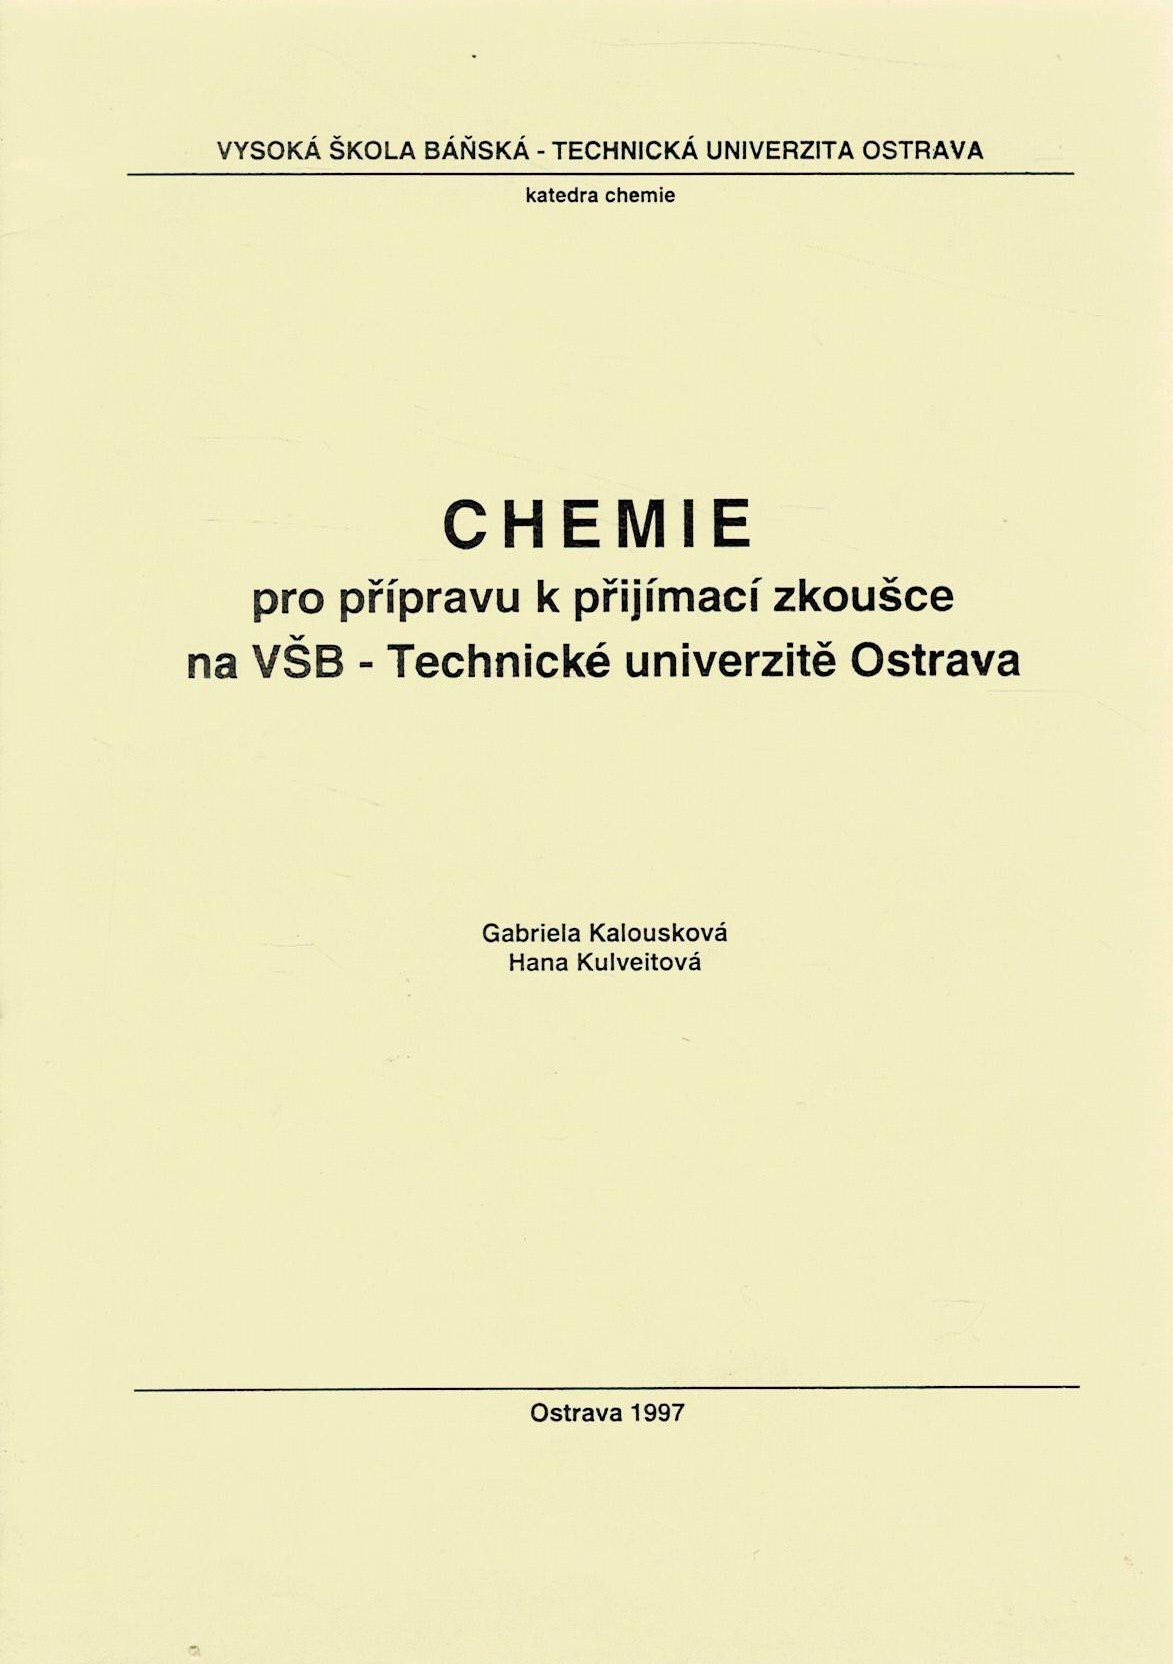 Kalousková, G., Kulveitová, H.: Chemie